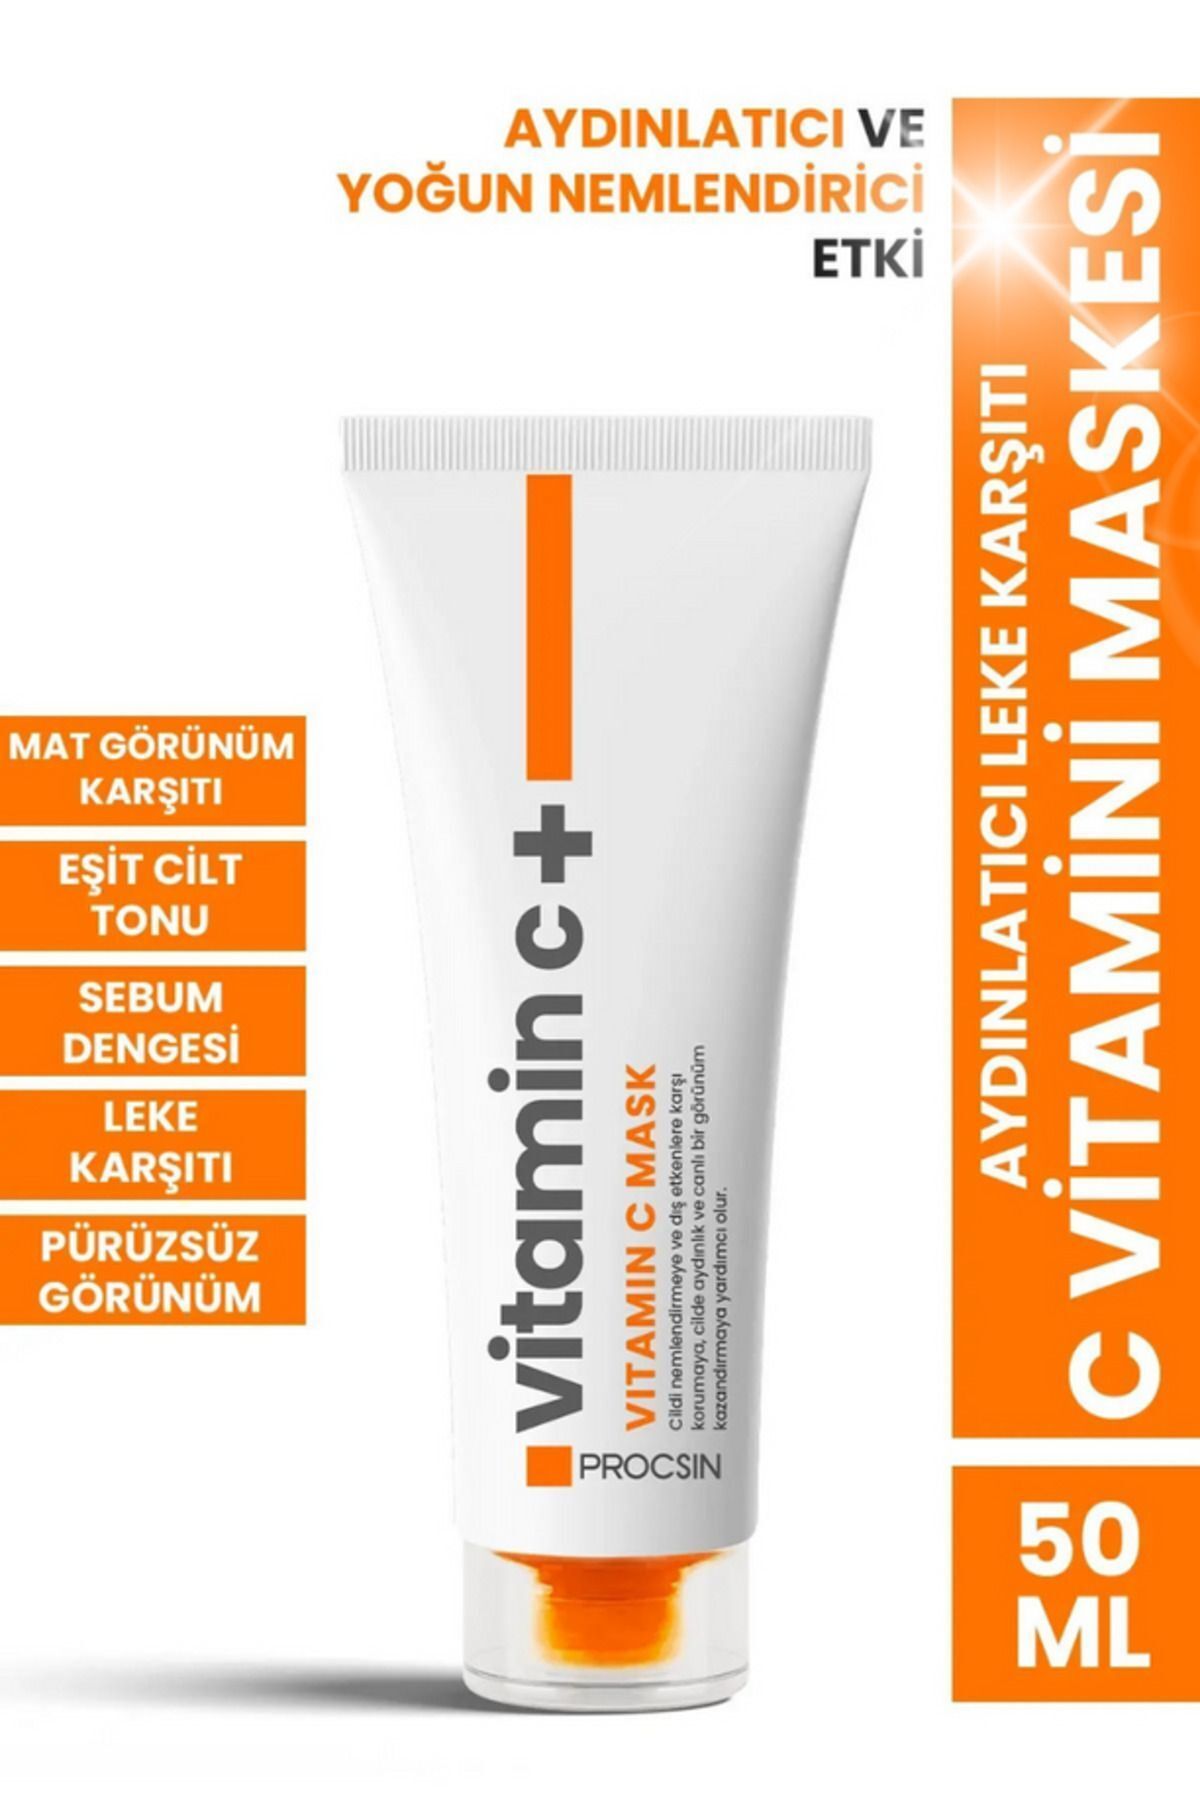 PROCSIN Aydınlatıcı Leke Karşıtı C Vitamini Maskesi 50 ML